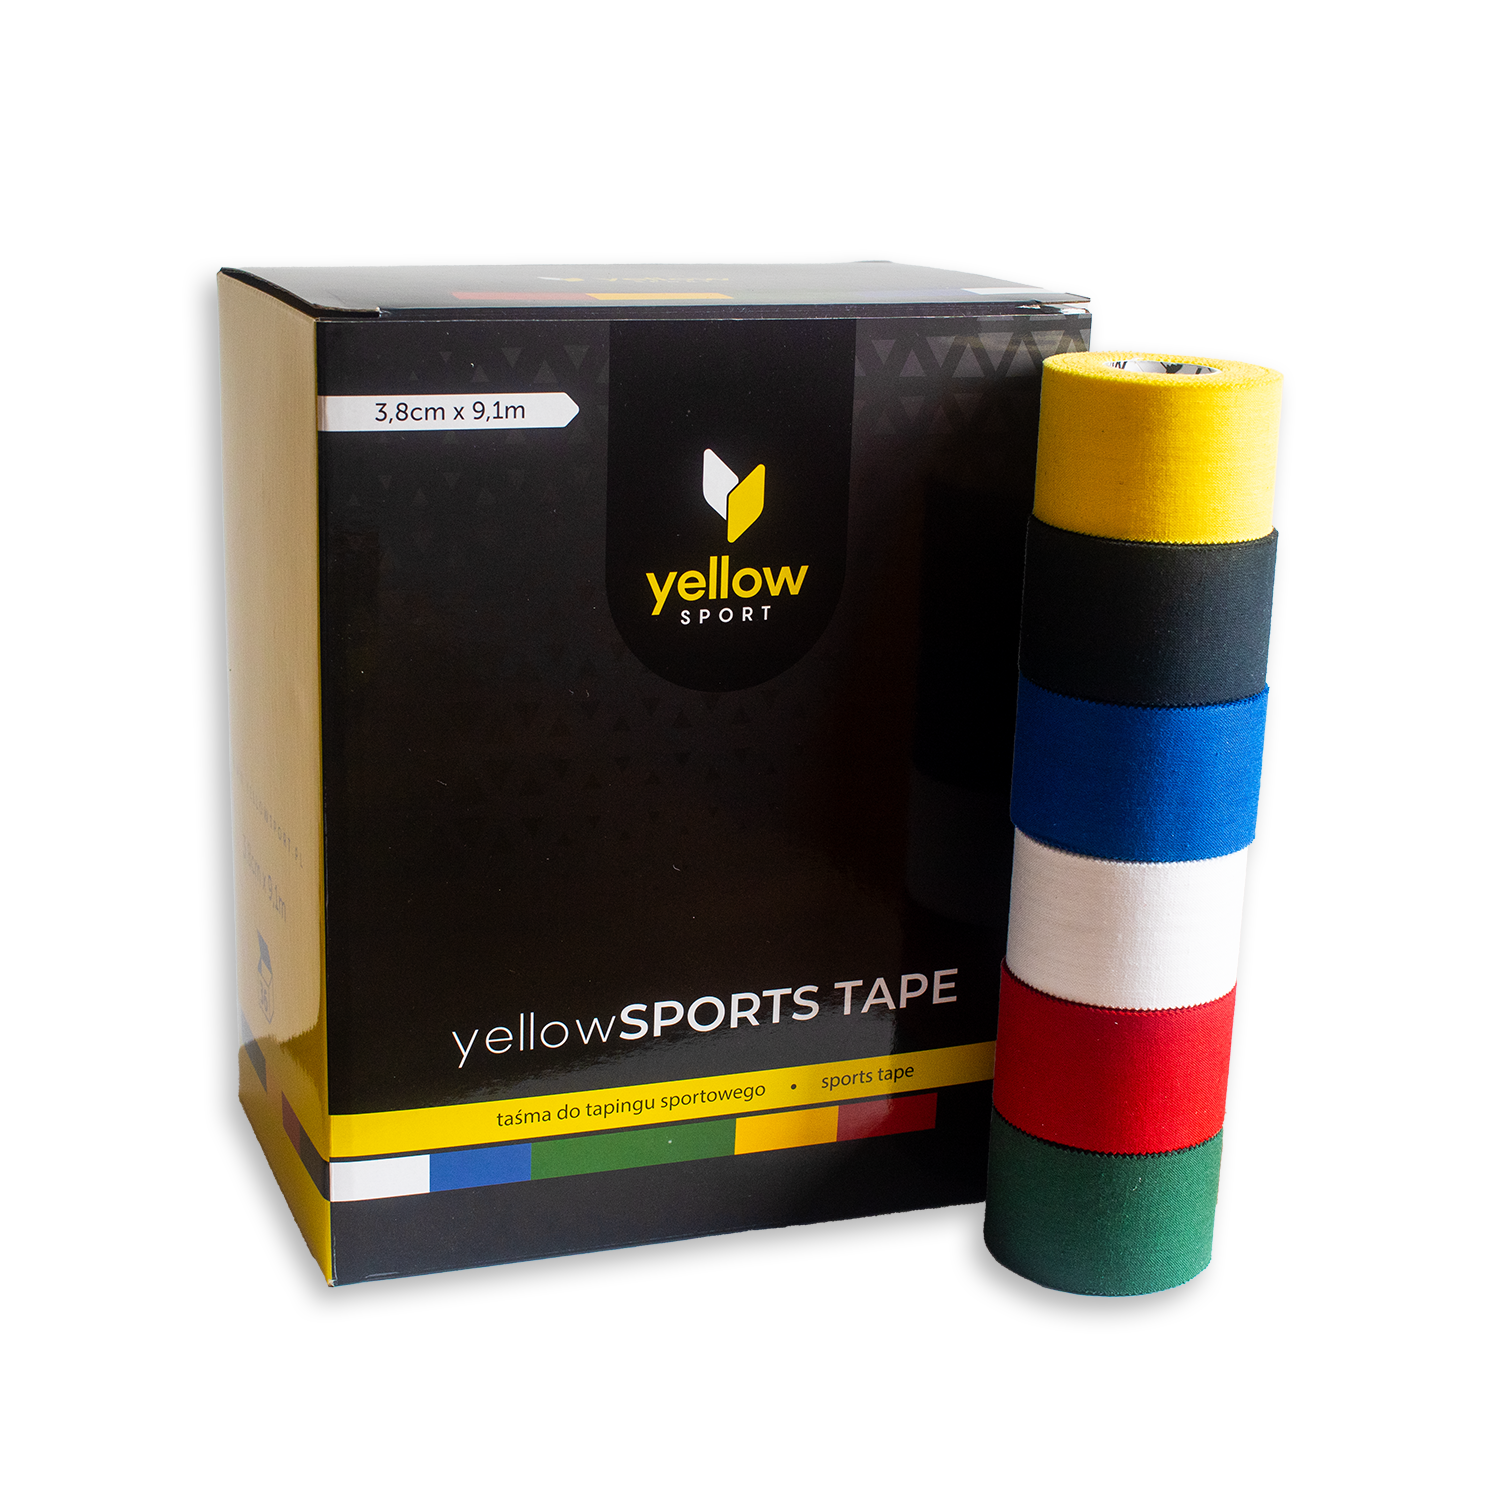 Taśma do tapingu sztywnego yellowSPORTS TAPE - mix kolorów, 3,8cm x 9,1m, 36 szt.